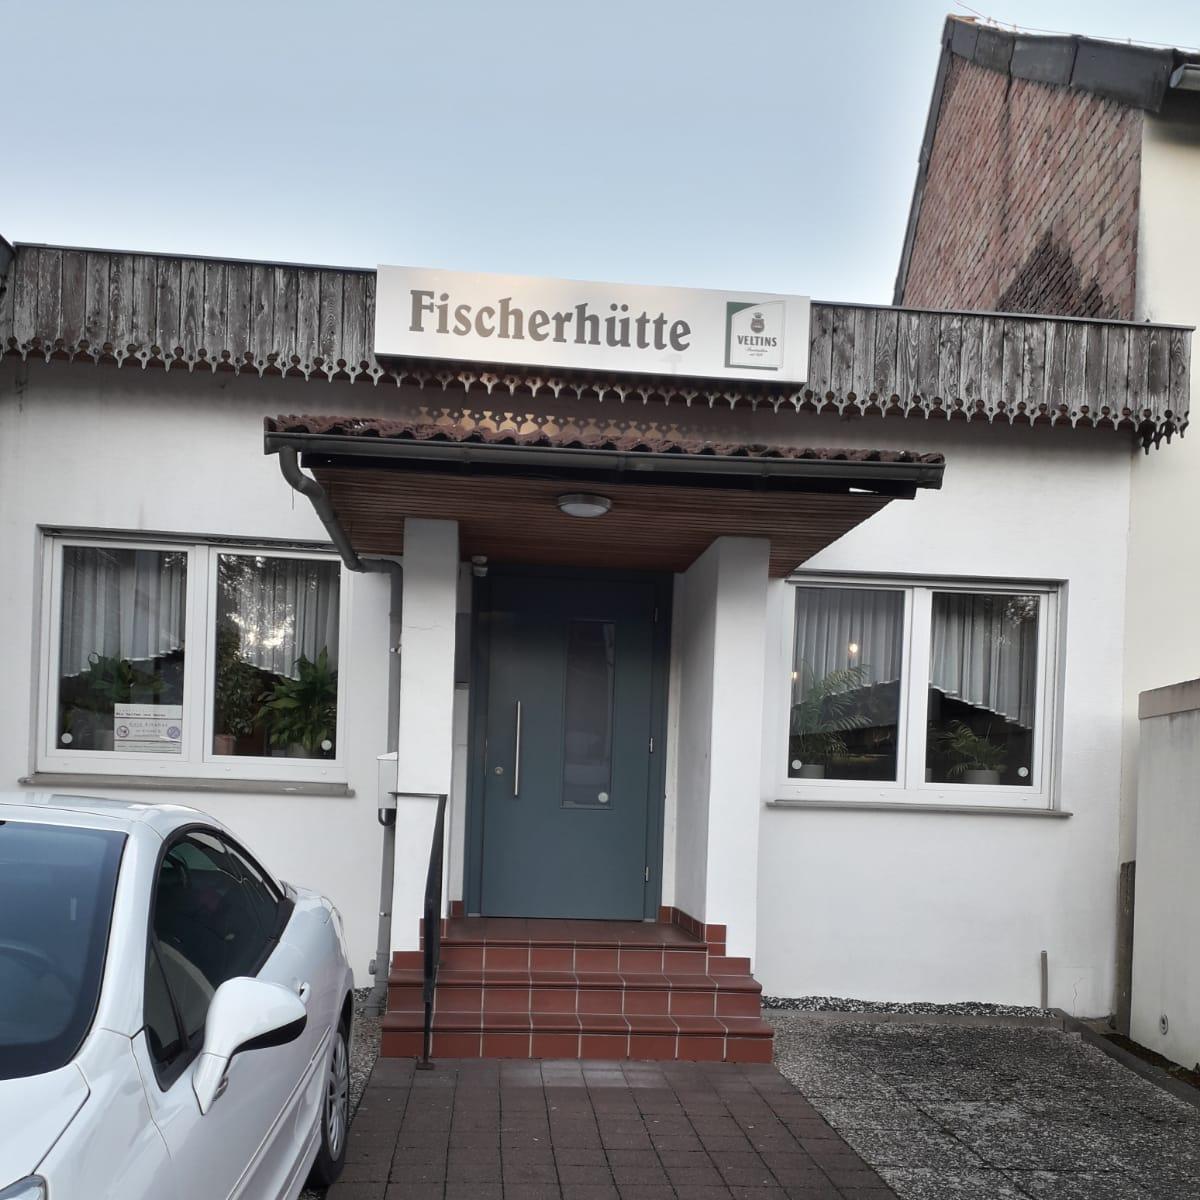 Restaurant "Fischerhütte" in Brakel